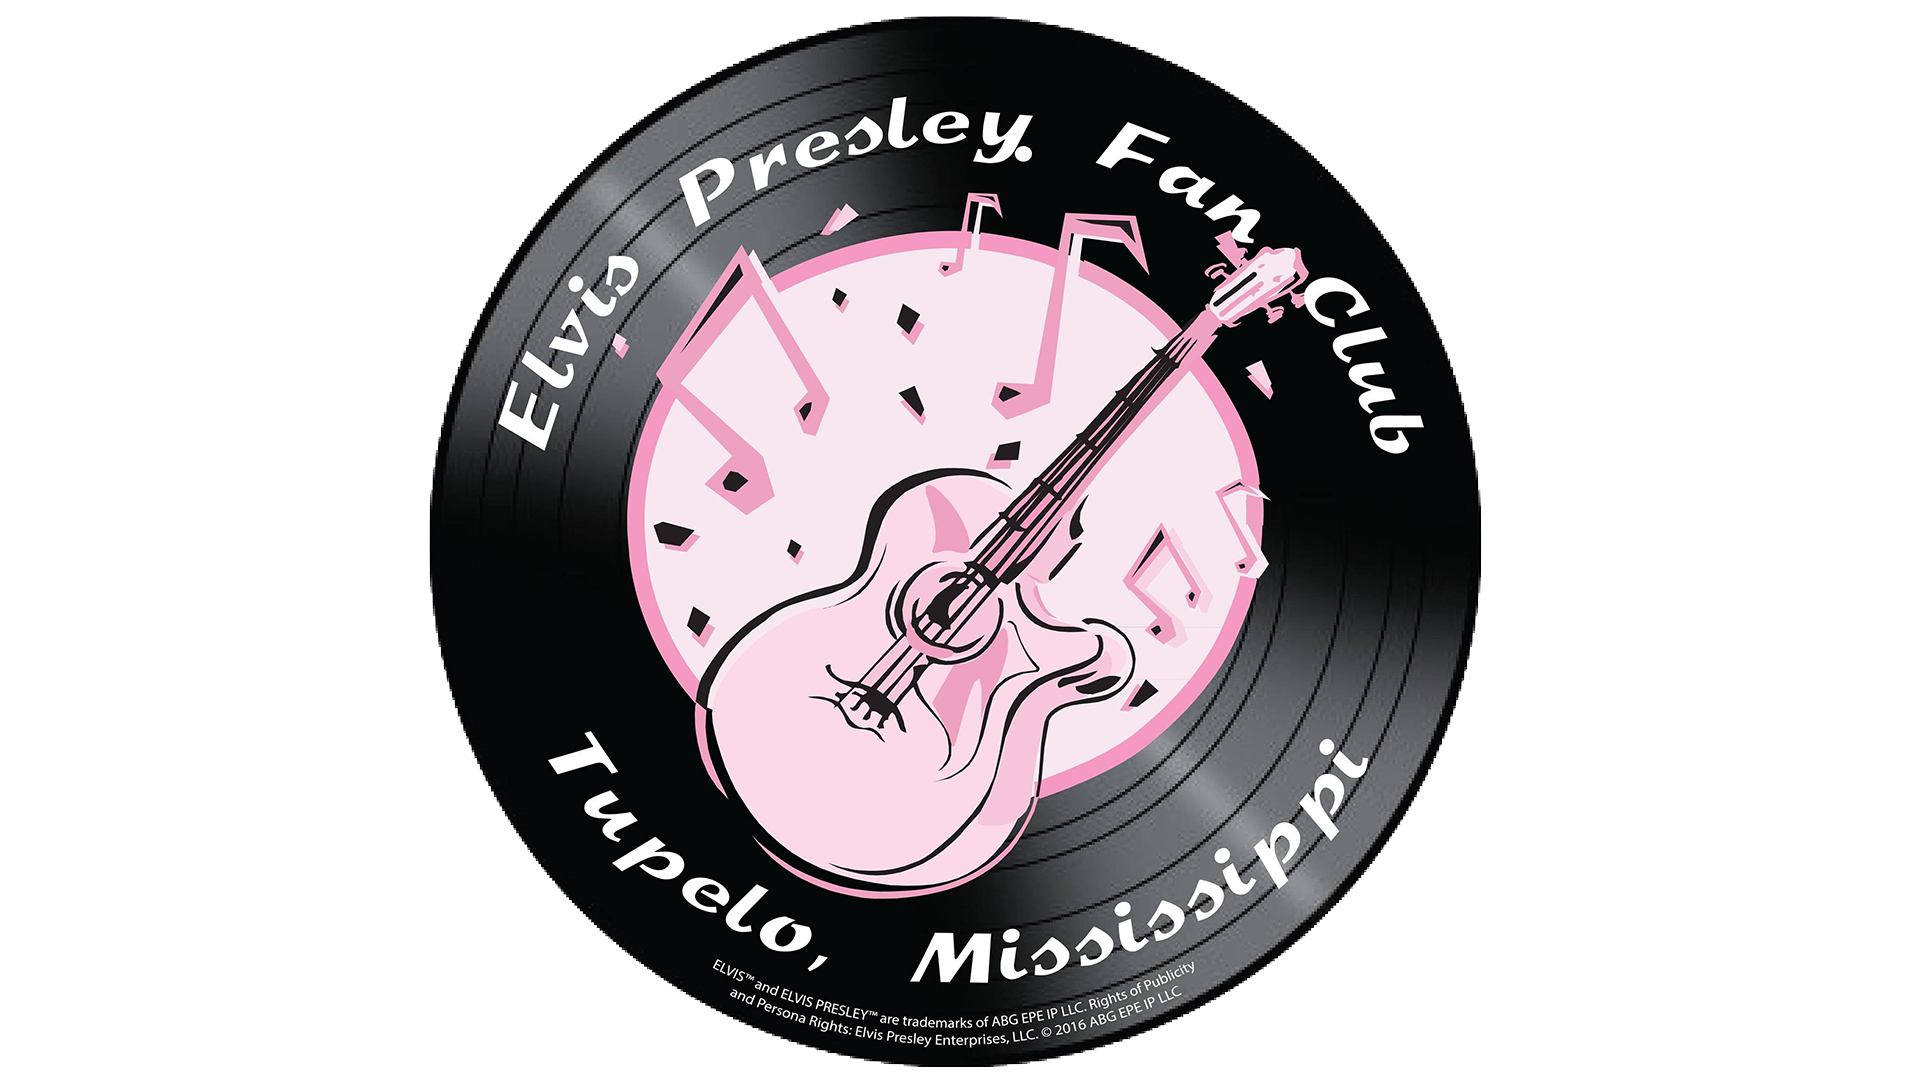 Tupelo Elvis Presley Fan Club logo.png